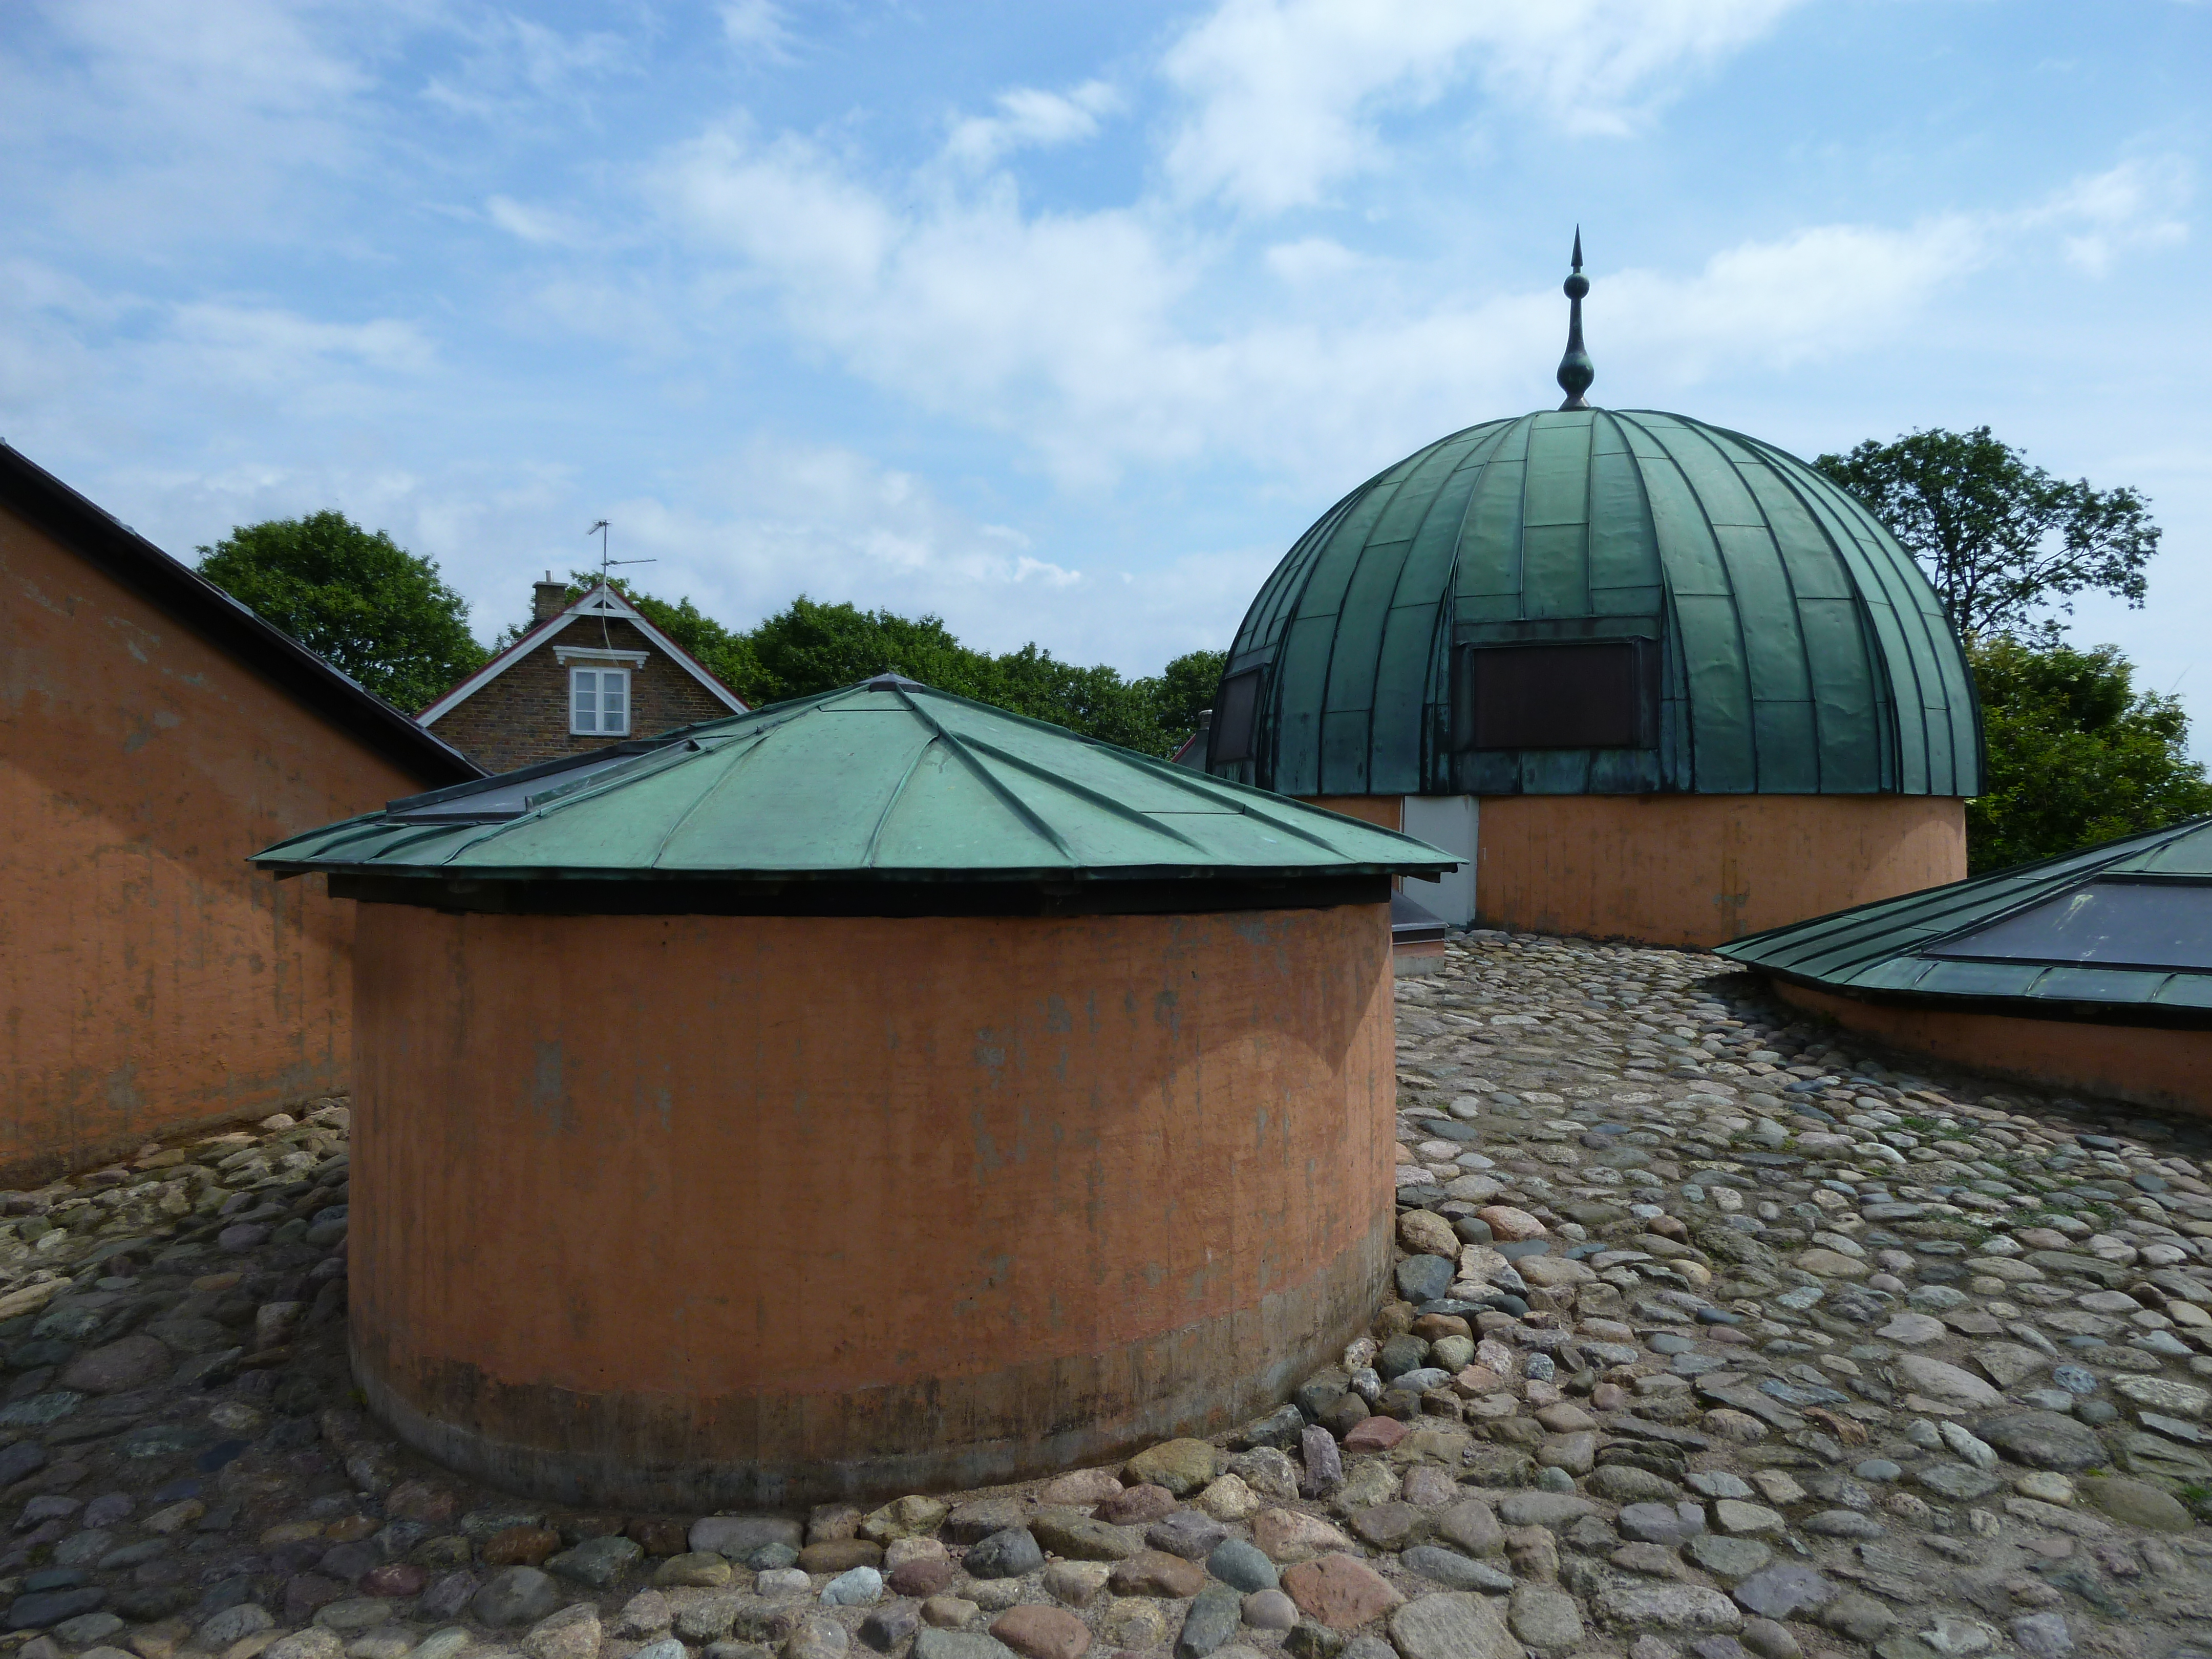 Stjerneborg. Resterna av Brahes observatorium finns under marken. Här gick vi på en visning. Den tar bara ca en kvart och kostar en tia utöver entrén till museum och trädgård. Alltid spännande med ställen under marken, man undrar vad som kan finnas där, eller hur?